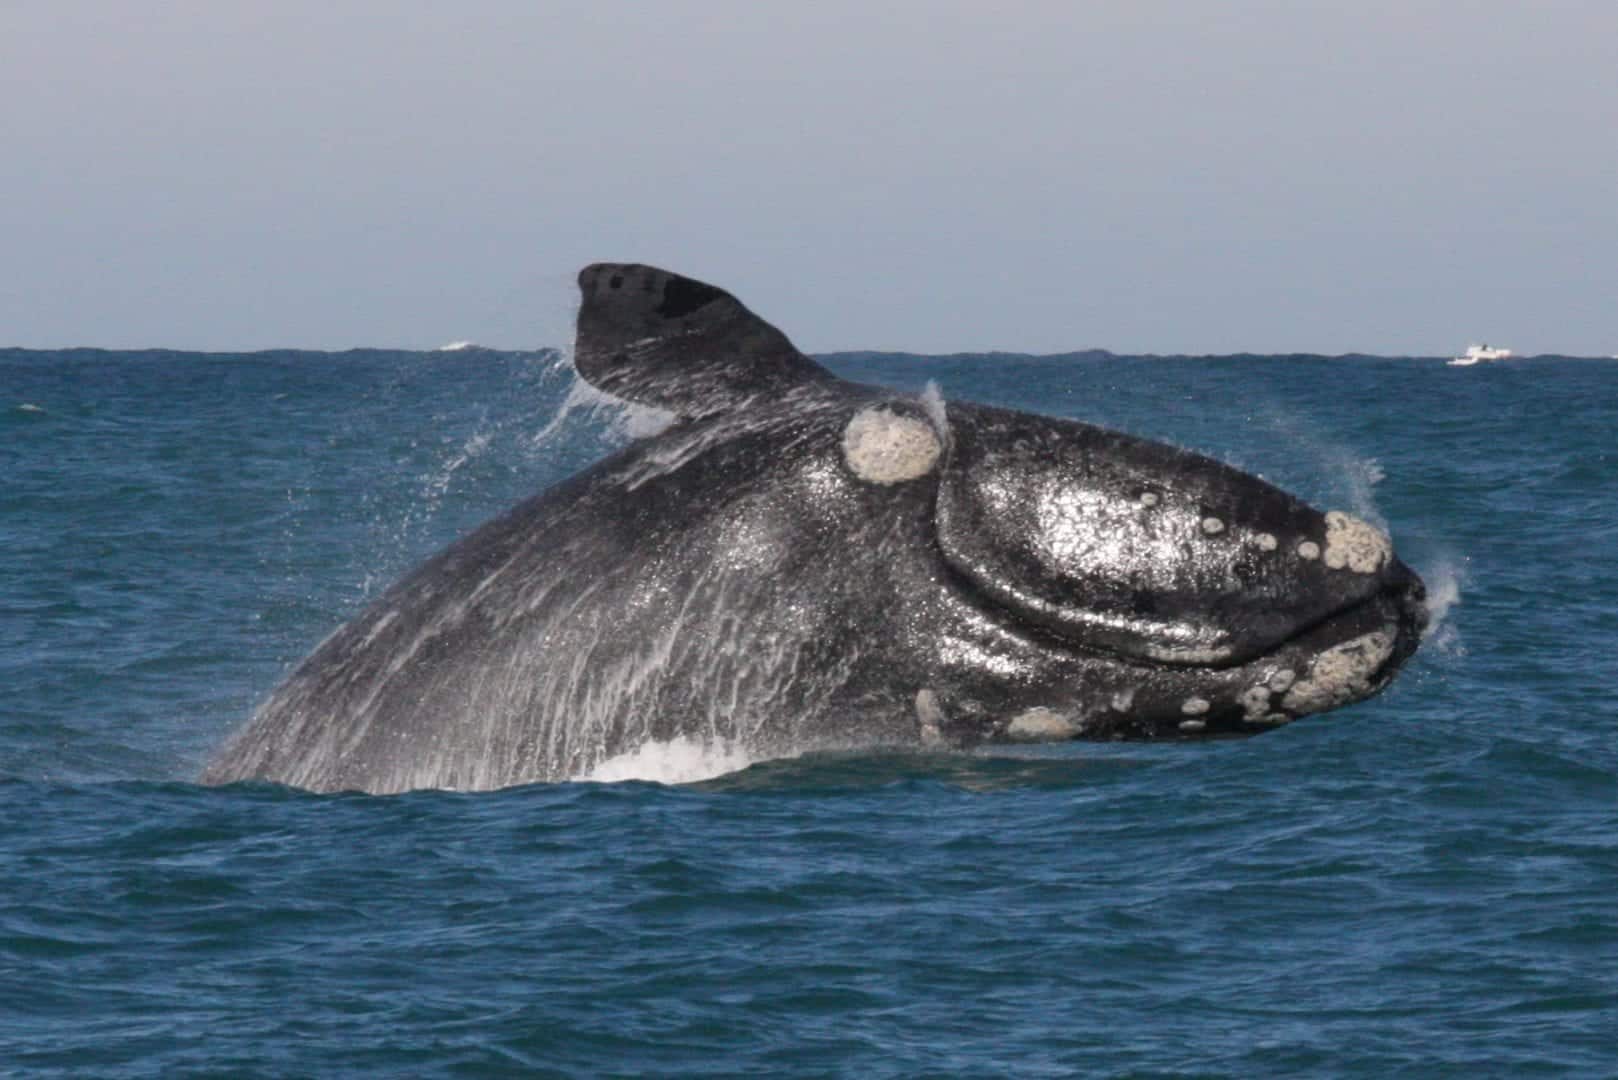  Baleines - Caractéristiques et principales espèces dans le monde